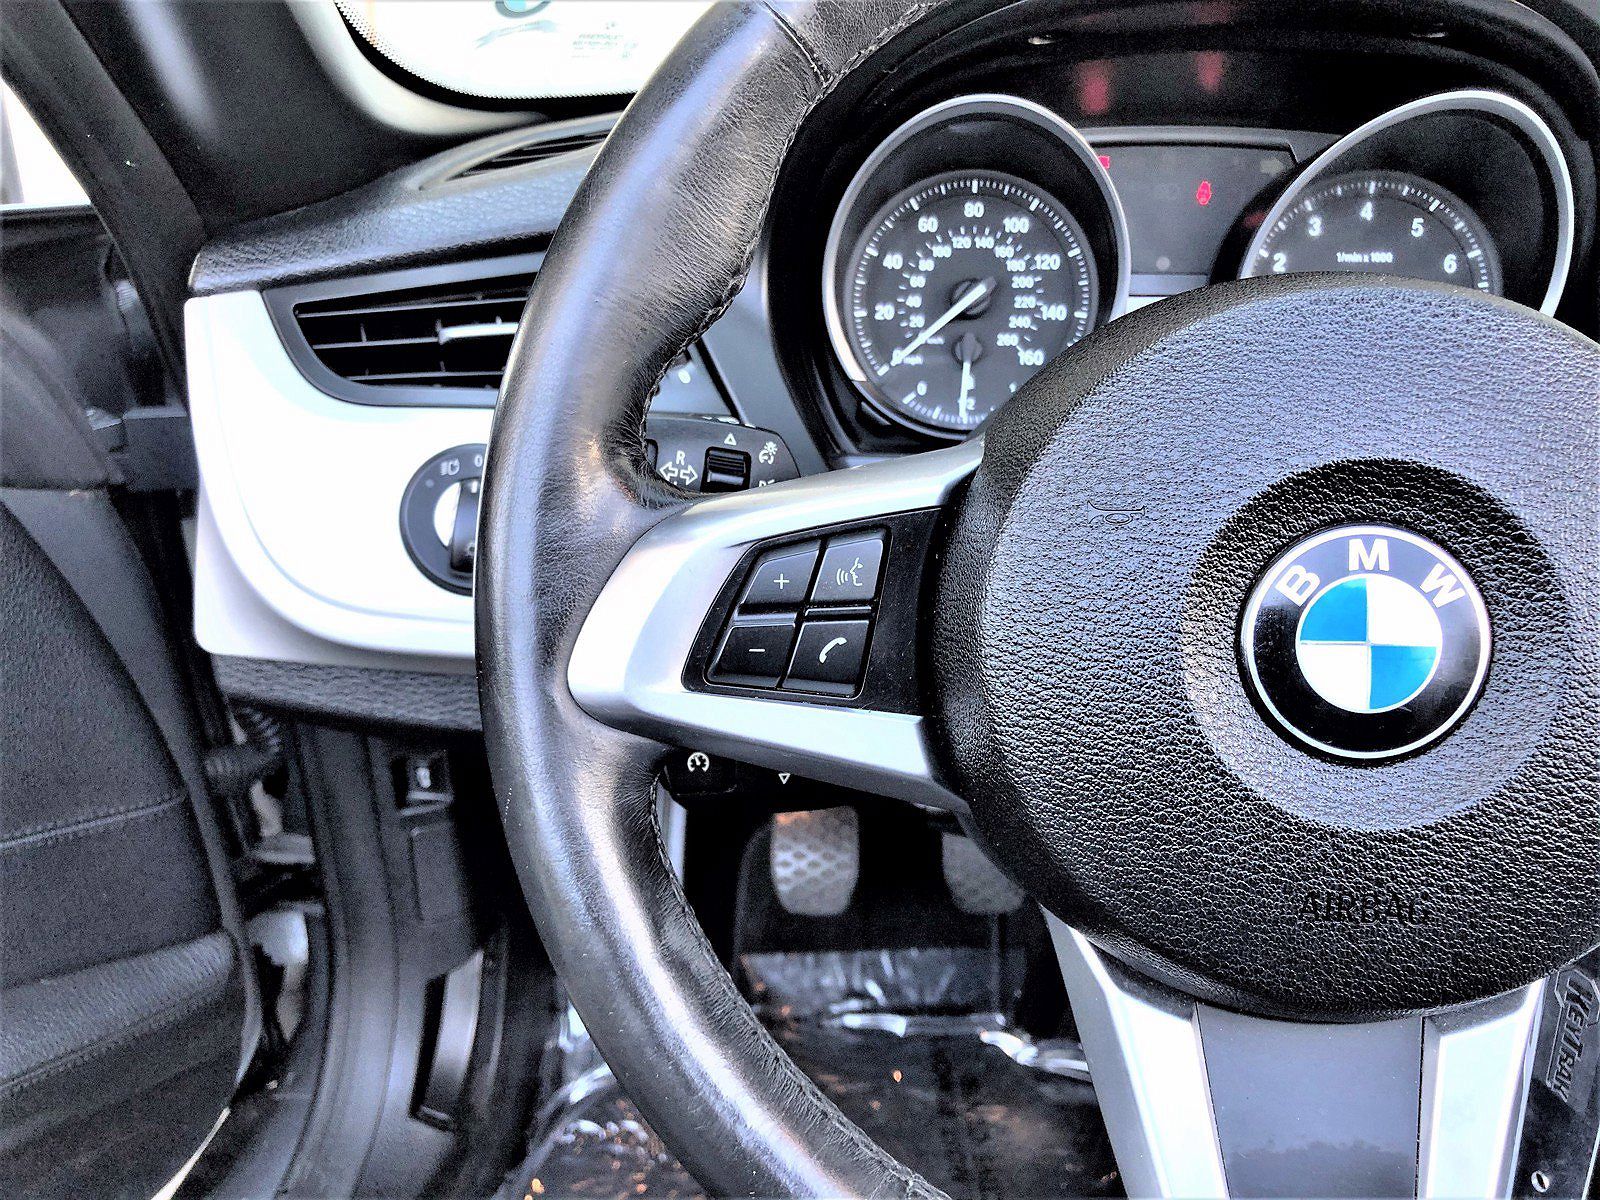 2009 BMW Z4 sDrive30i image 9